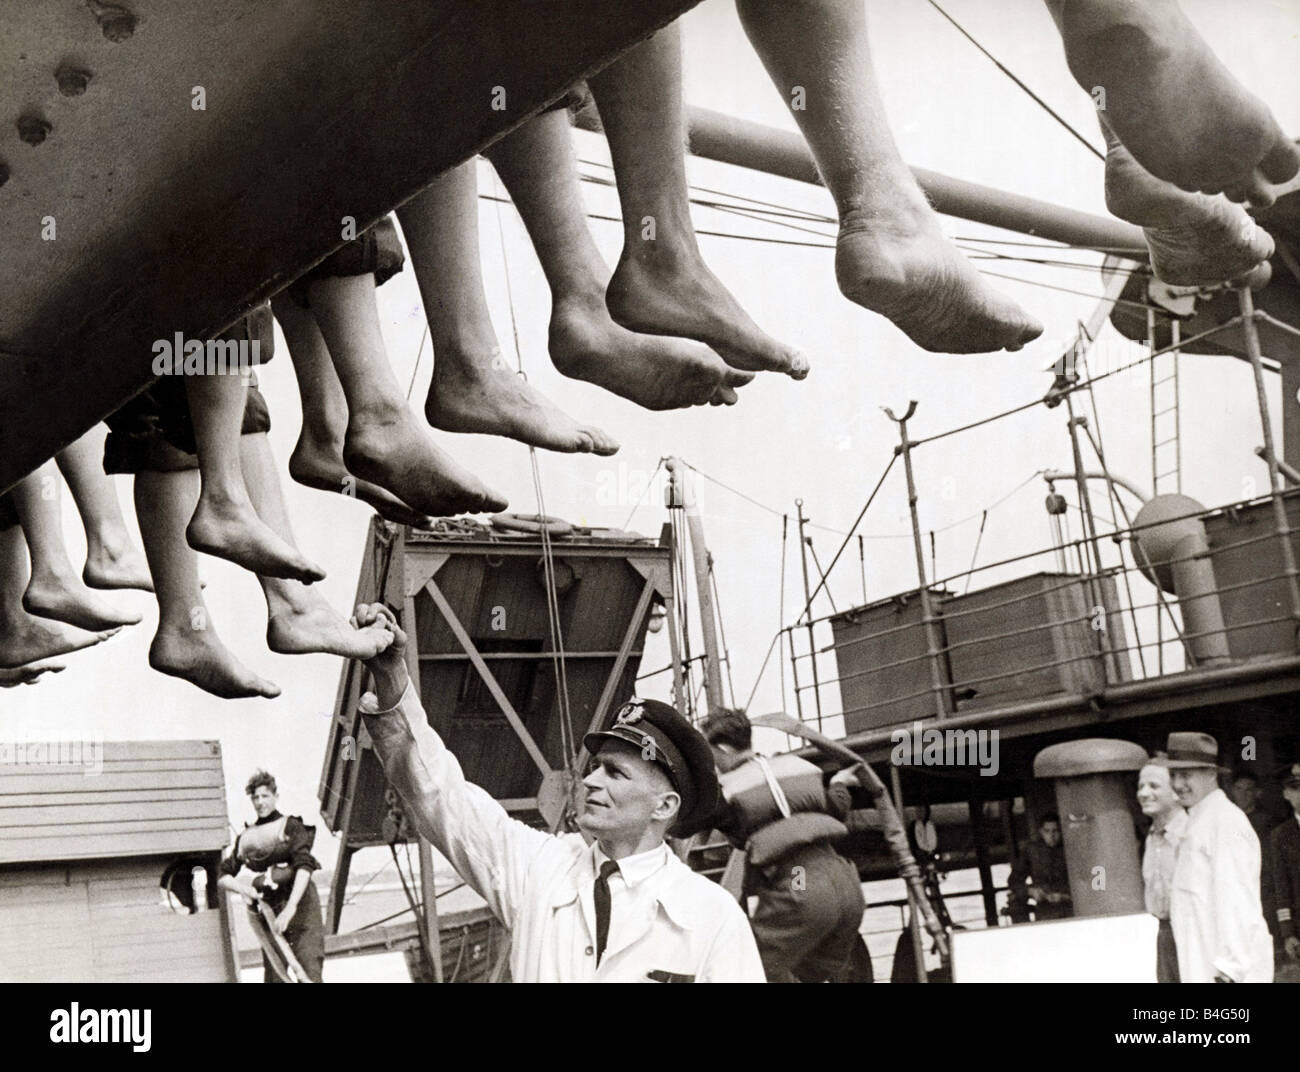 Handelsmarine Ausbildung Juni 1944 die Jungs haben ihre Füße inspiziert die Jungs stellen ihre best Foot forward Stockfoto